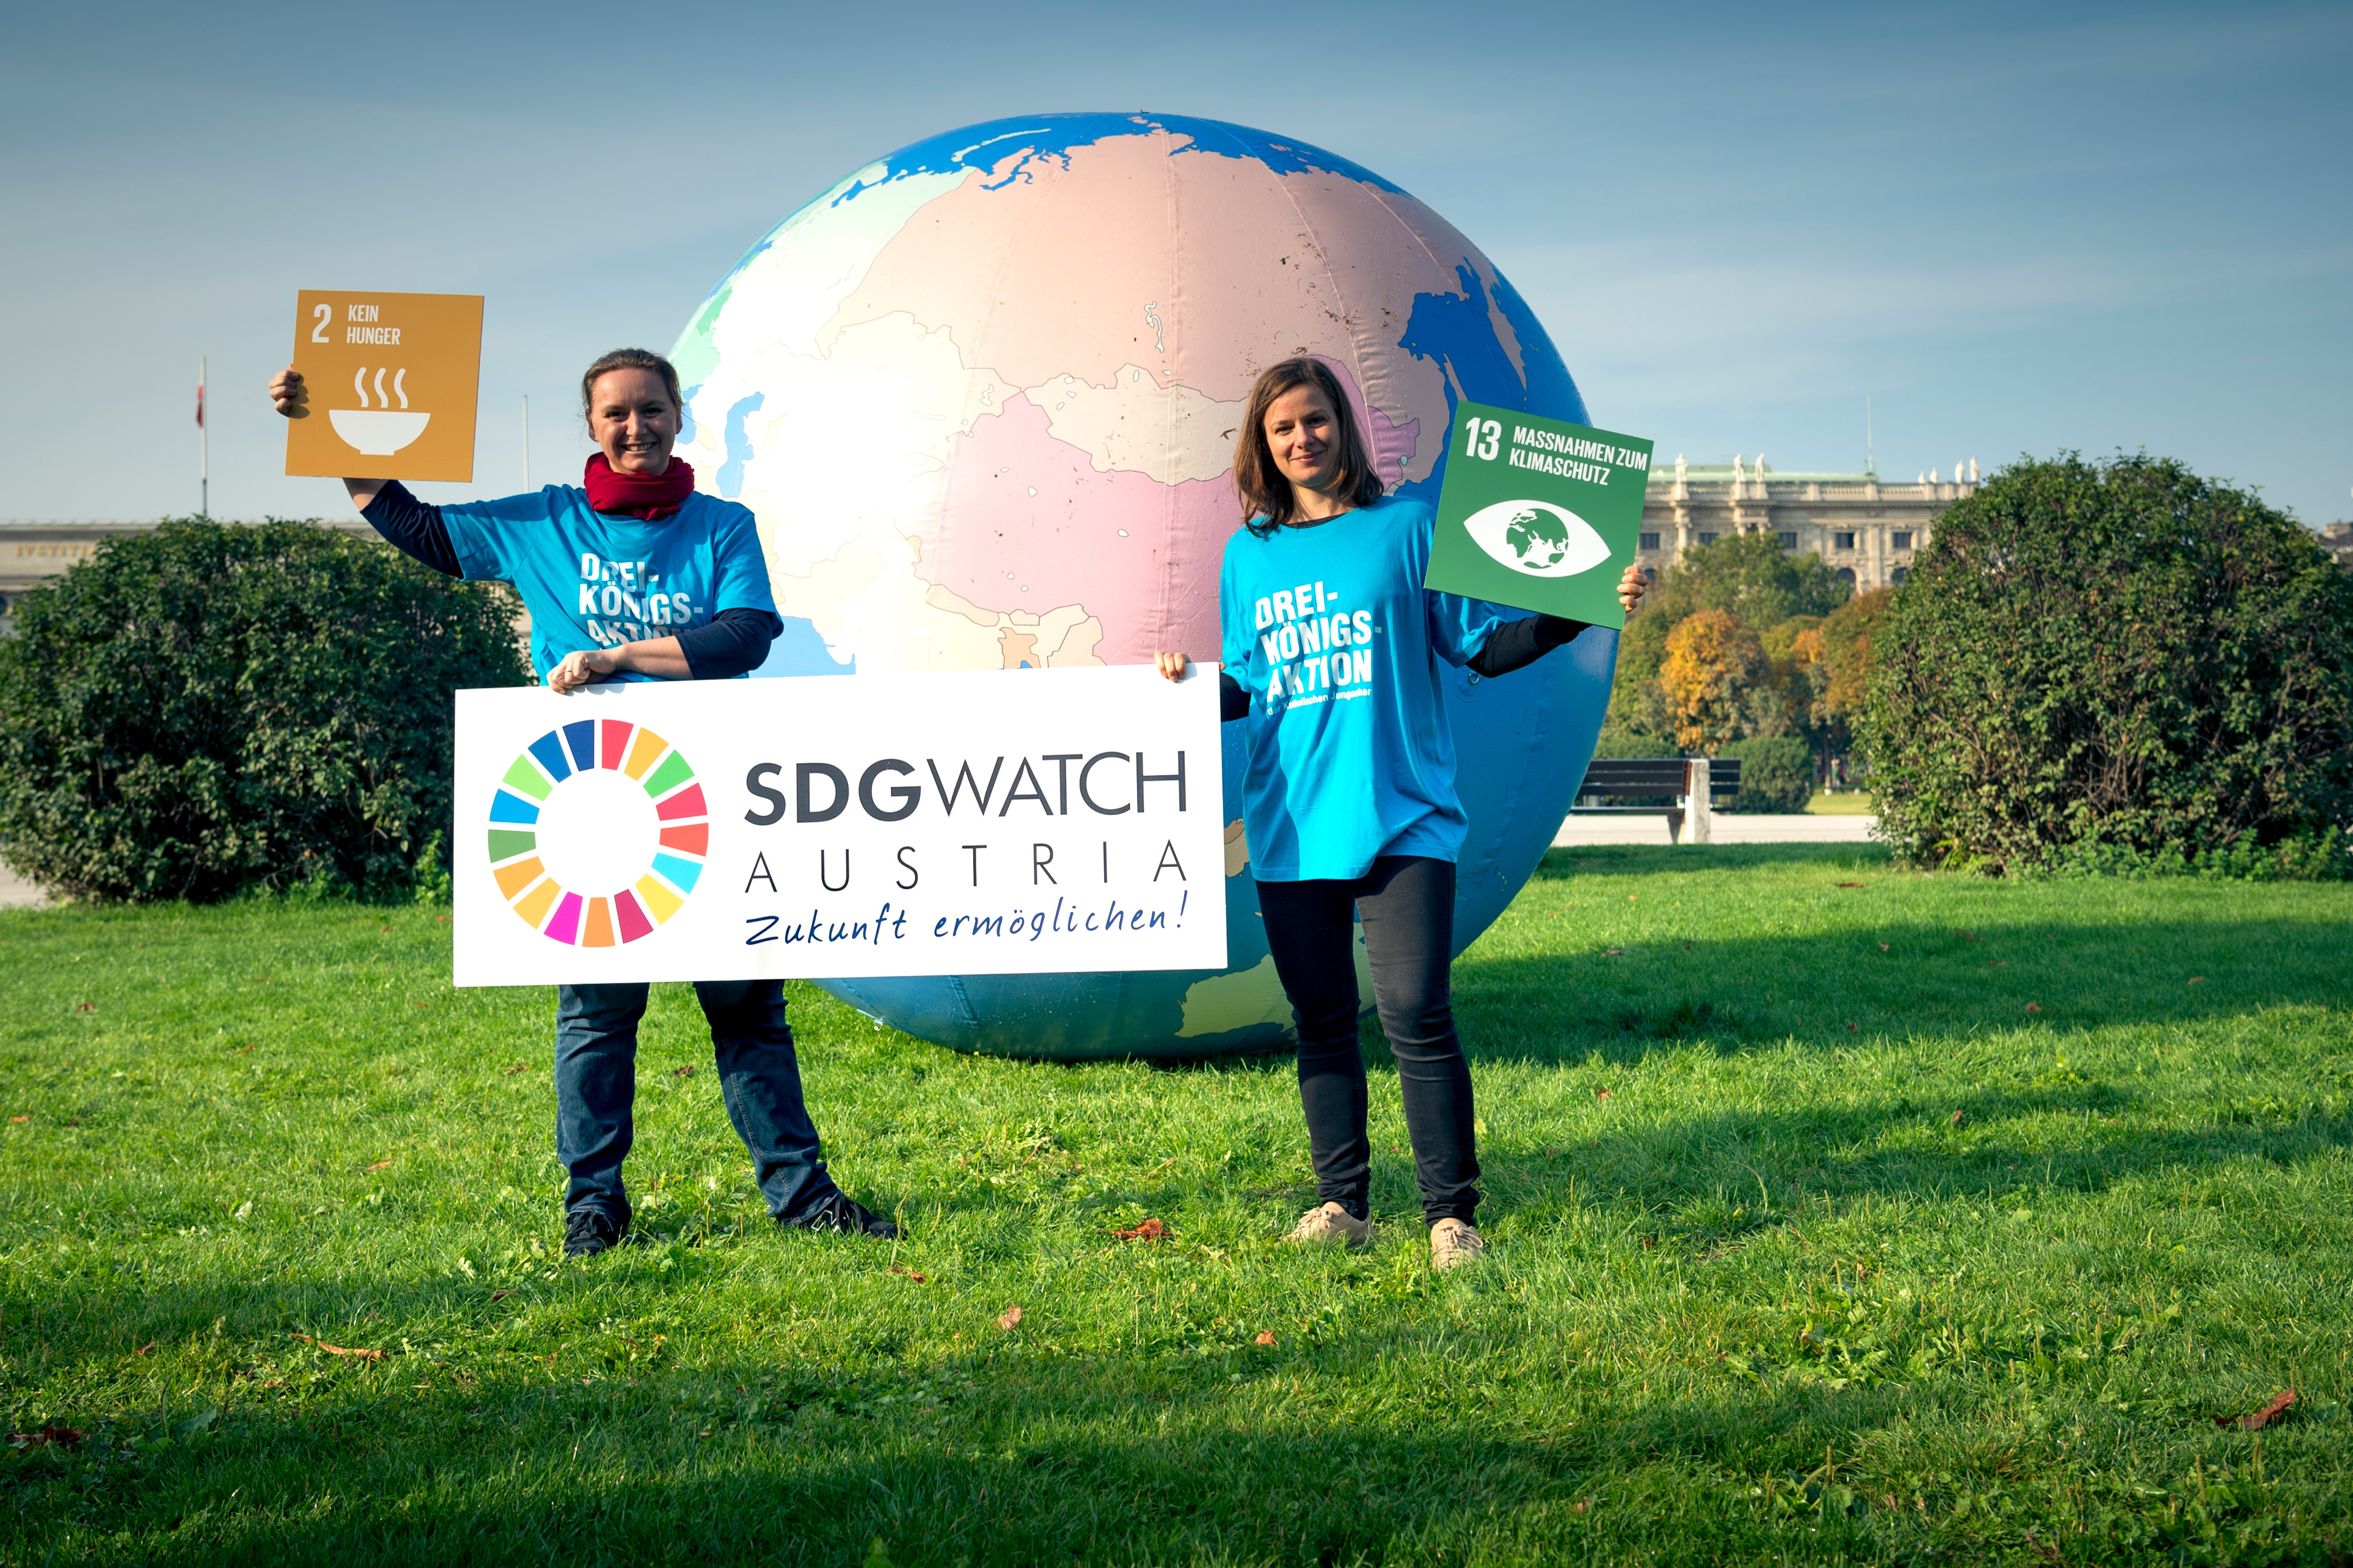 Zwei Angestellte aus der Dreikönigsaktion halten ein Schild "SDG Watch Austria" und Schilder der SDG Ziele "2 Kein Hunger" und "13 Maßnahmen zum Klimaschutz". Hinter den beiden ist ein riesiger aufgeblasener Globus.